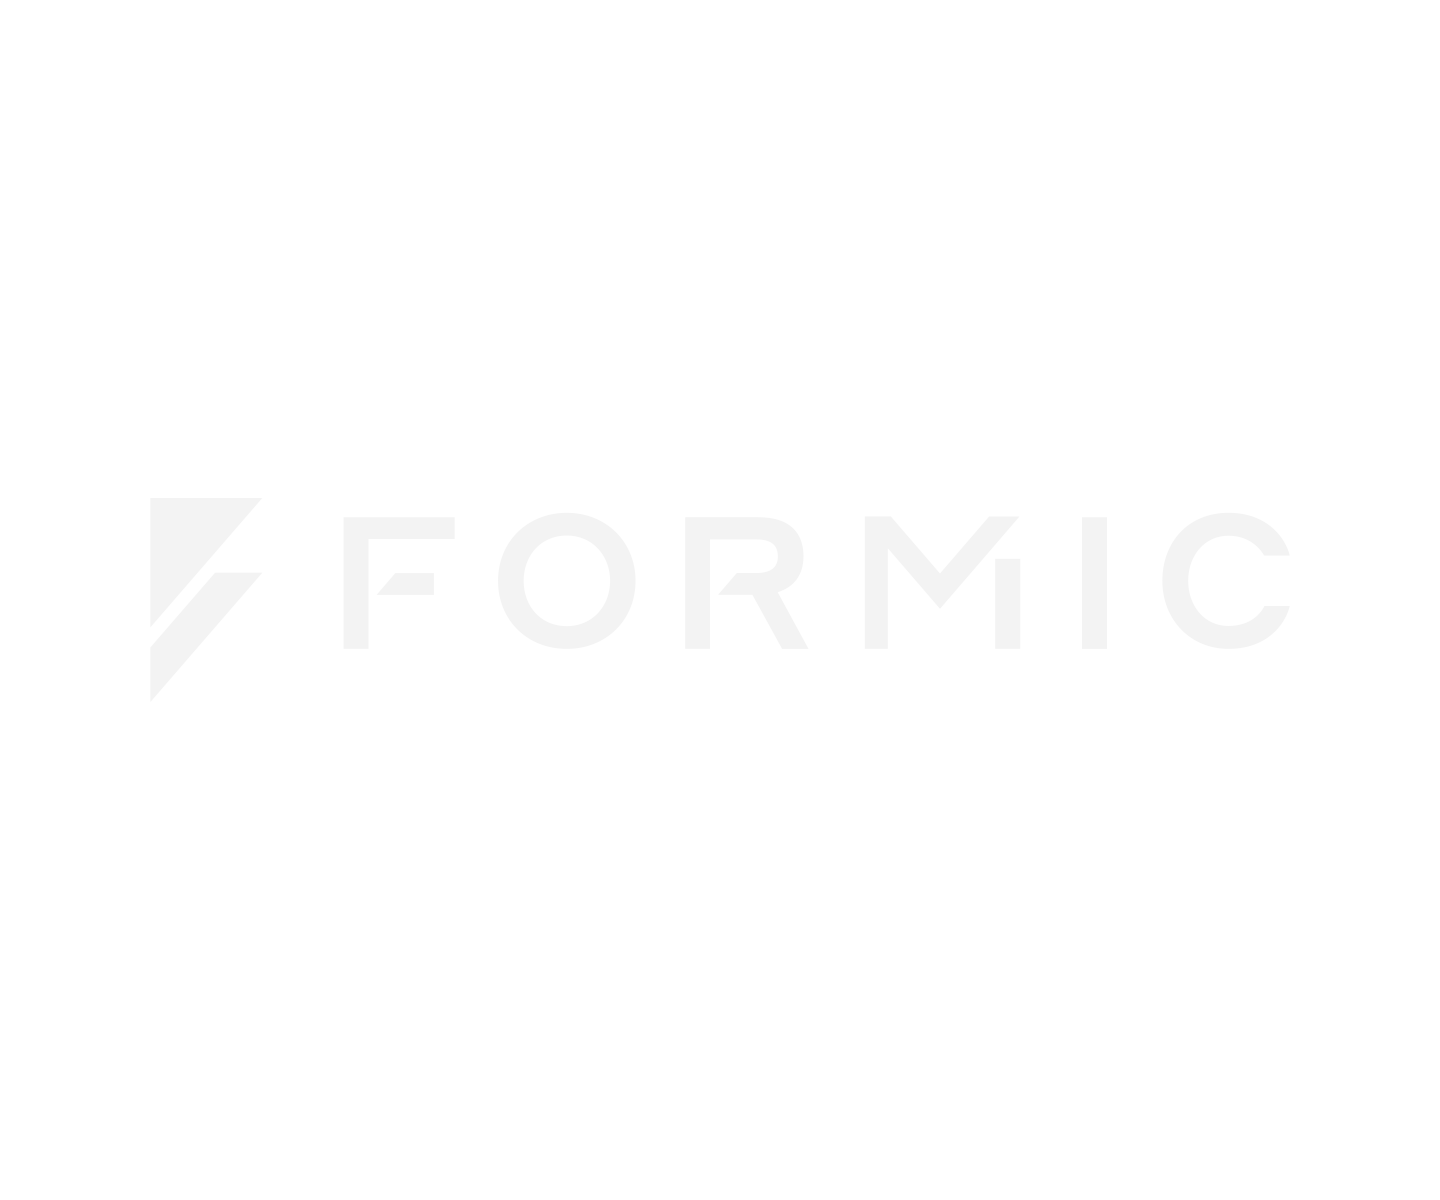 Formic